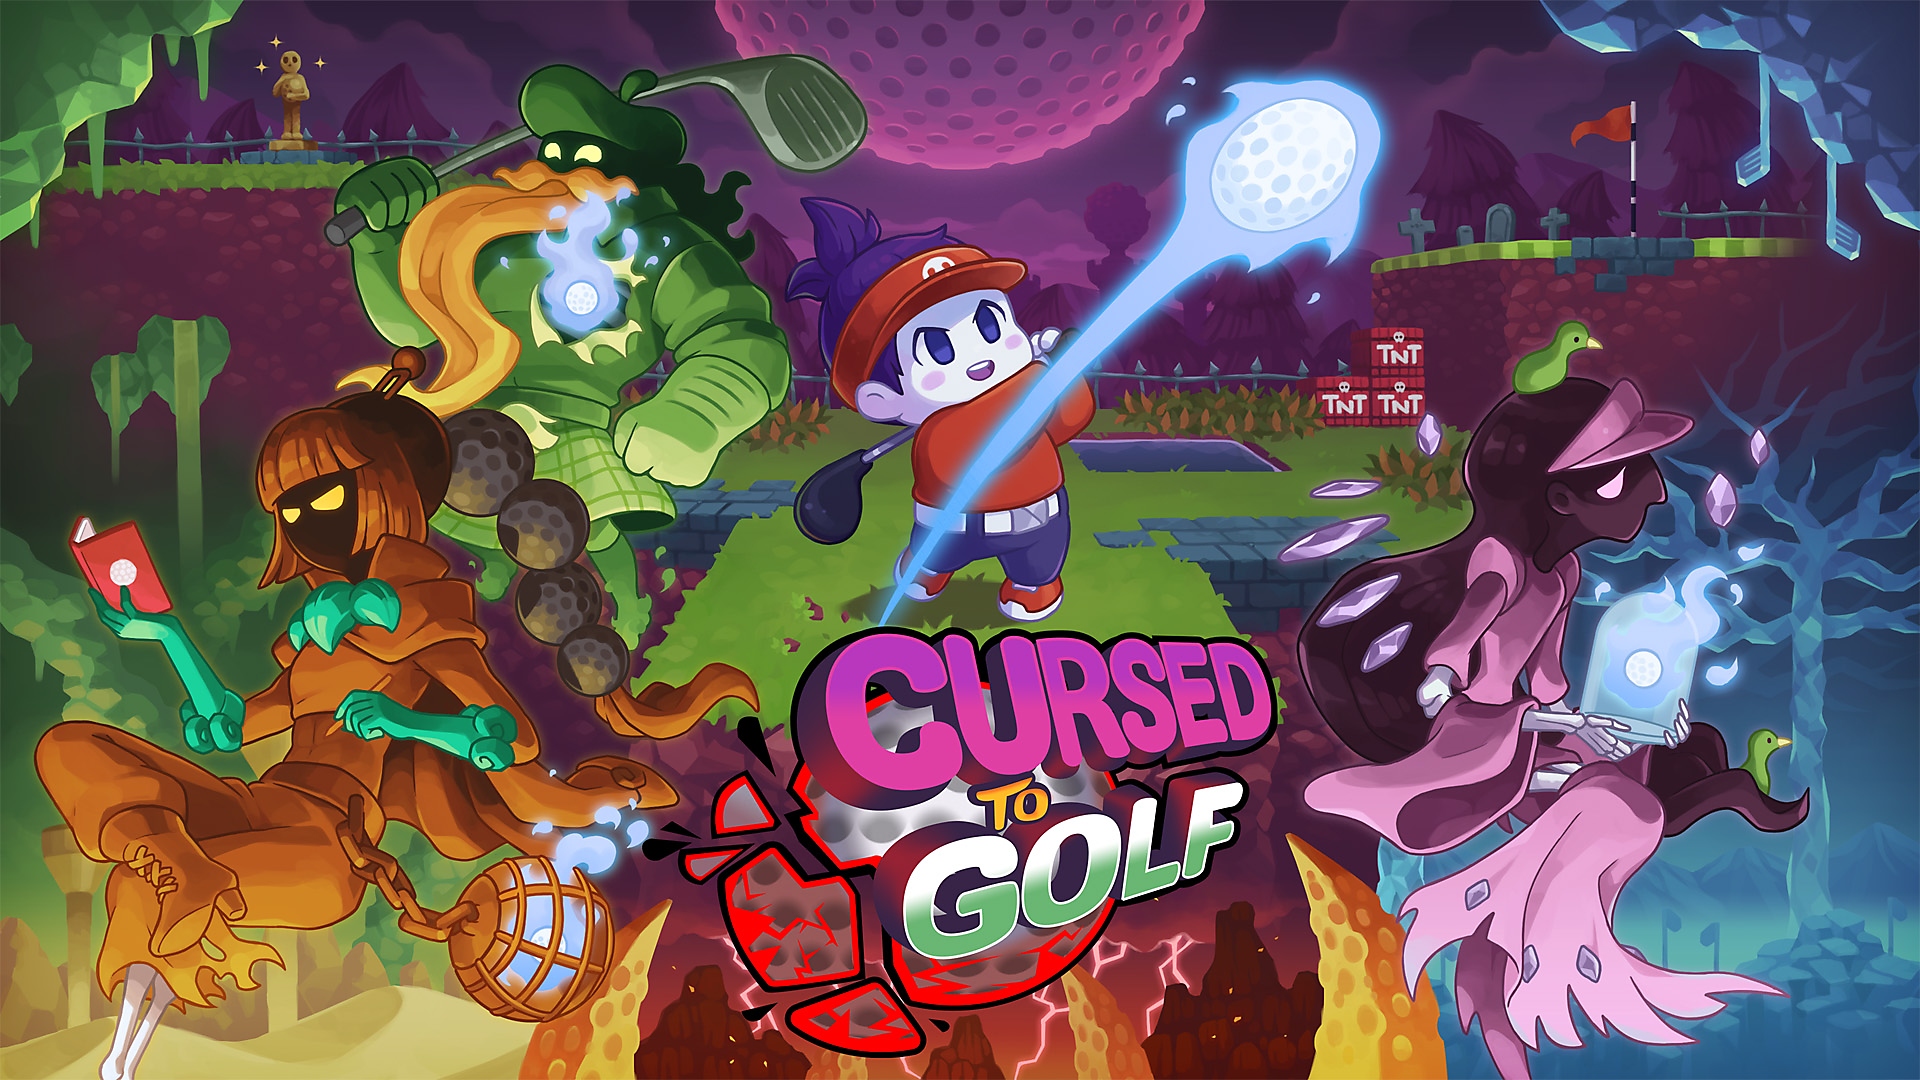 Cursed to Golf - ゴルフの準備はOK!? - 発売日告知 | PS5 & PS4ゲーム